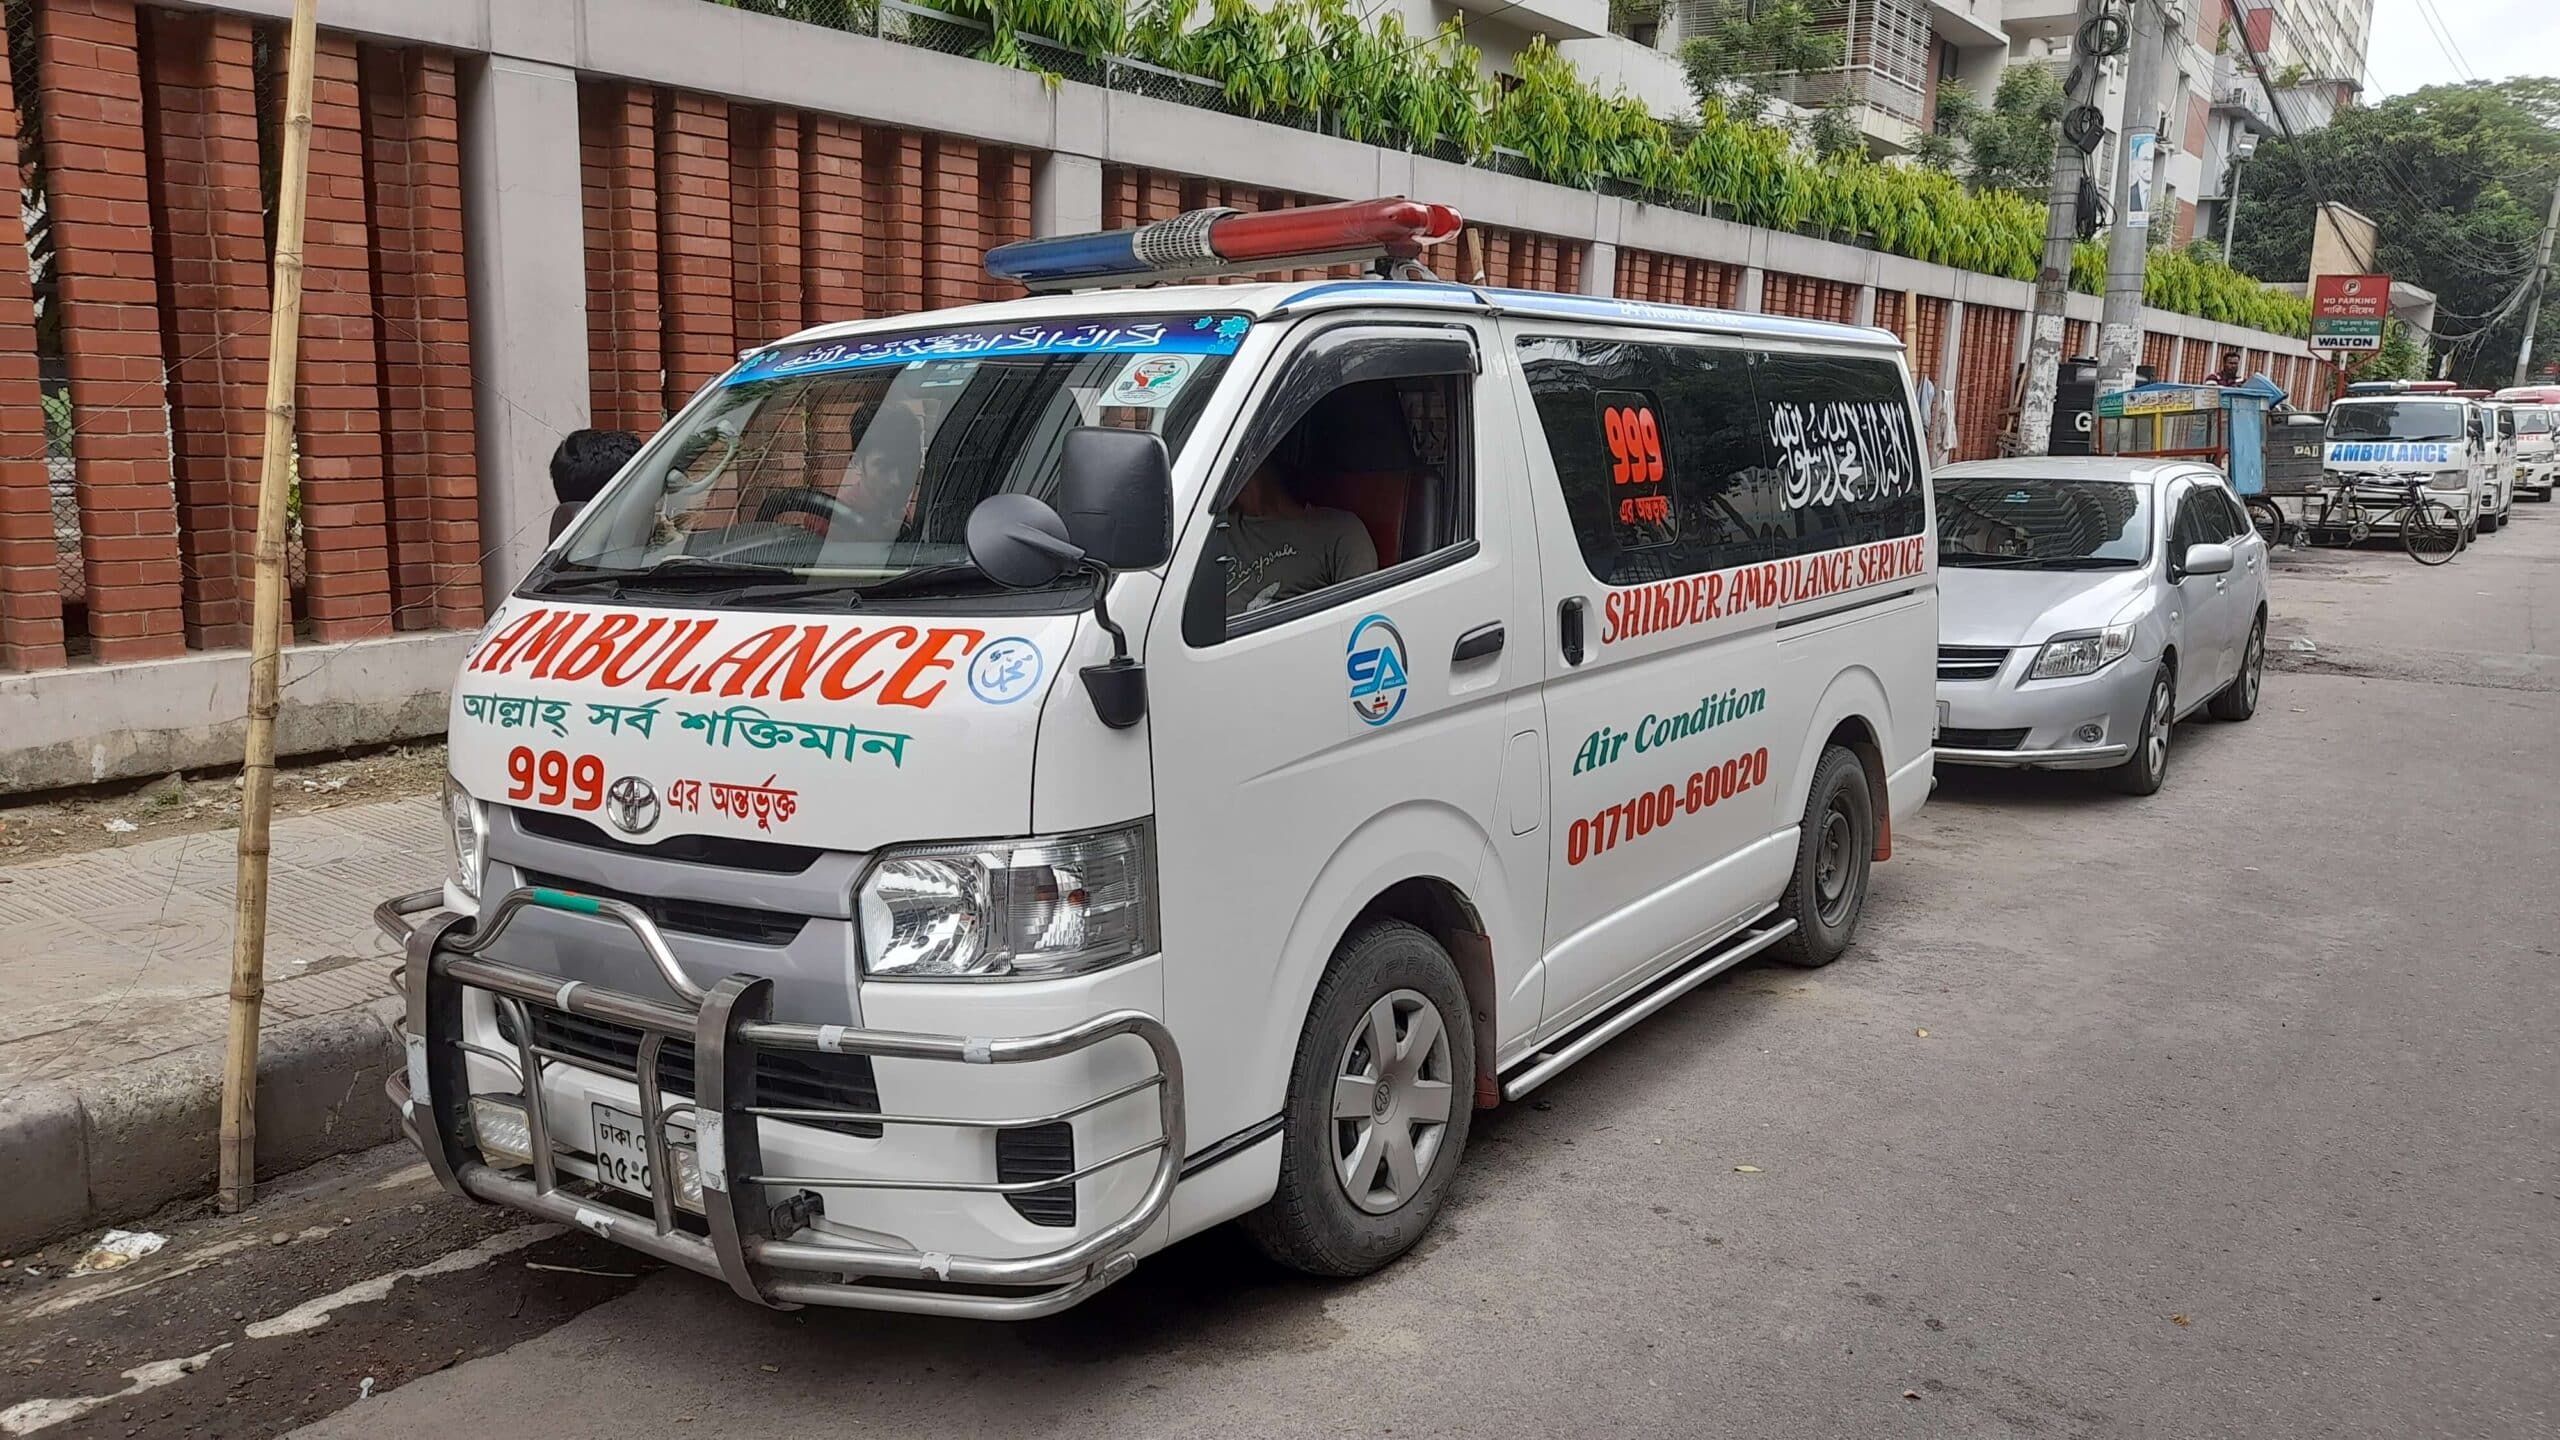 Ac ambulance service 24ambulance scaled